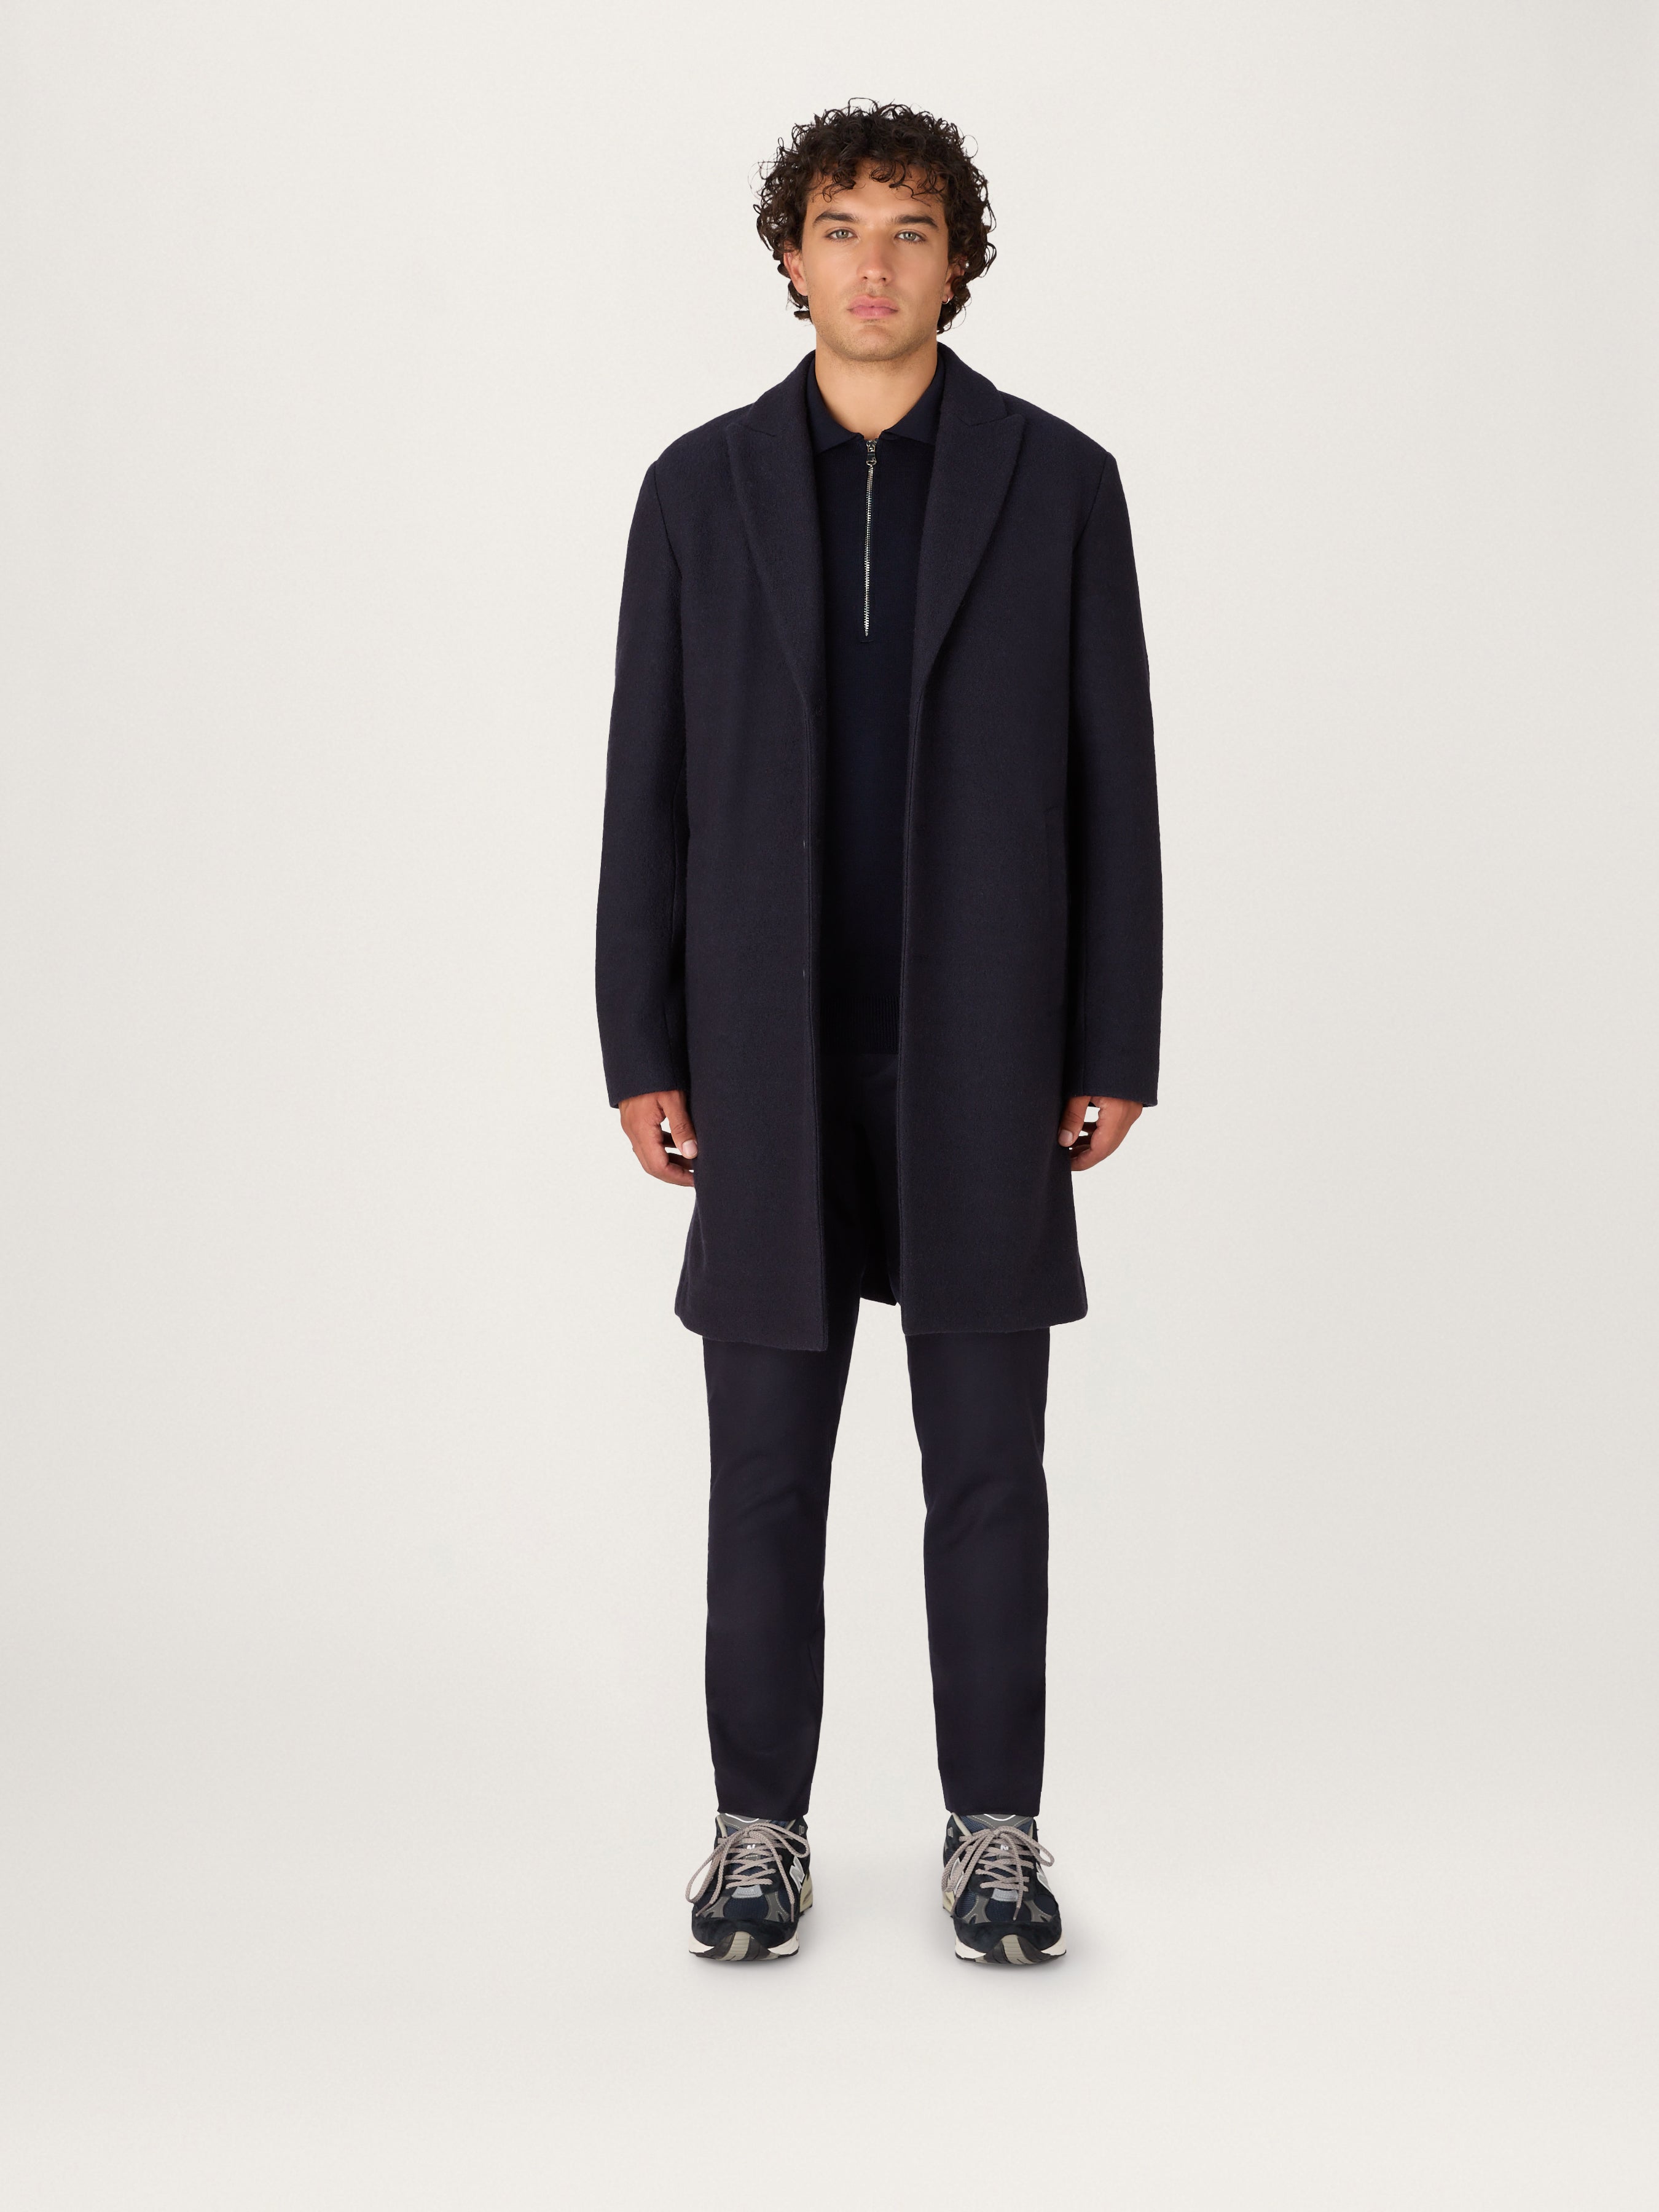 Elegant wool jersey coat in an Italian wool--blend fabric